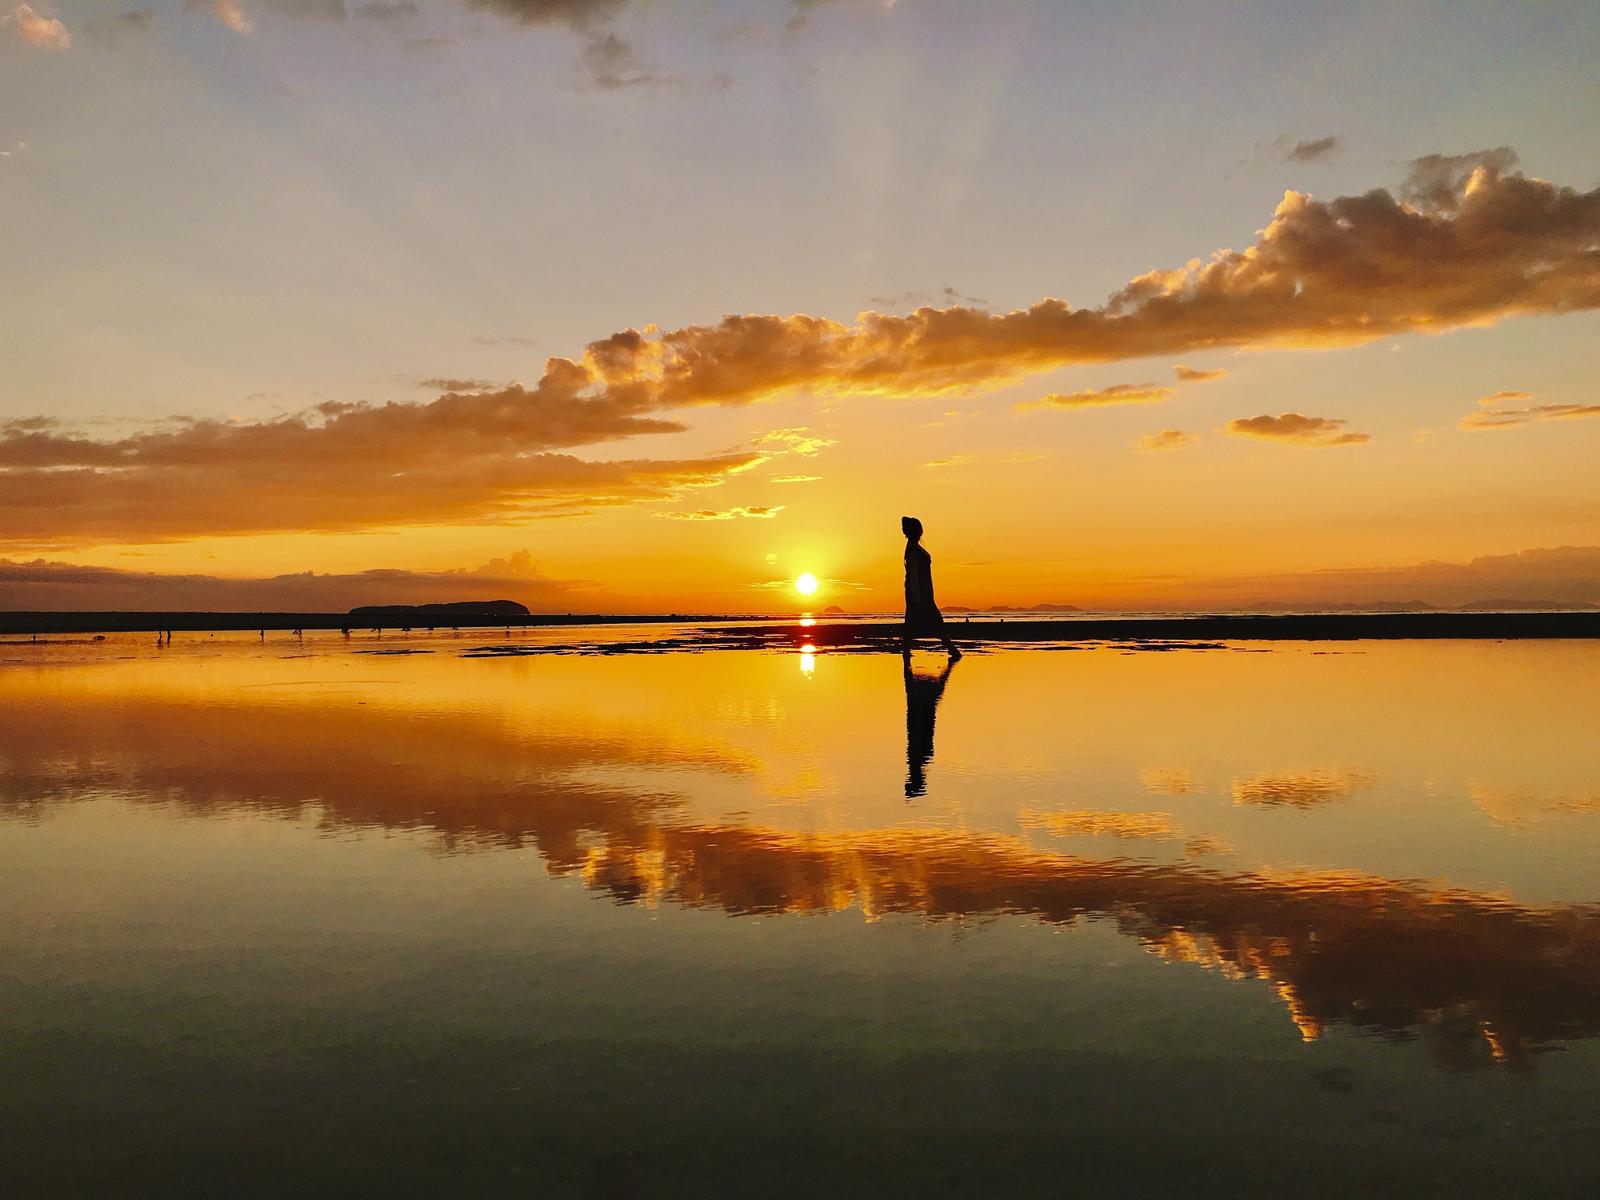 日本のウユニ塩湖 夕日の時間帯に訪れたいフォトスポット 川越コウが投稿したフォトブック Lemon8